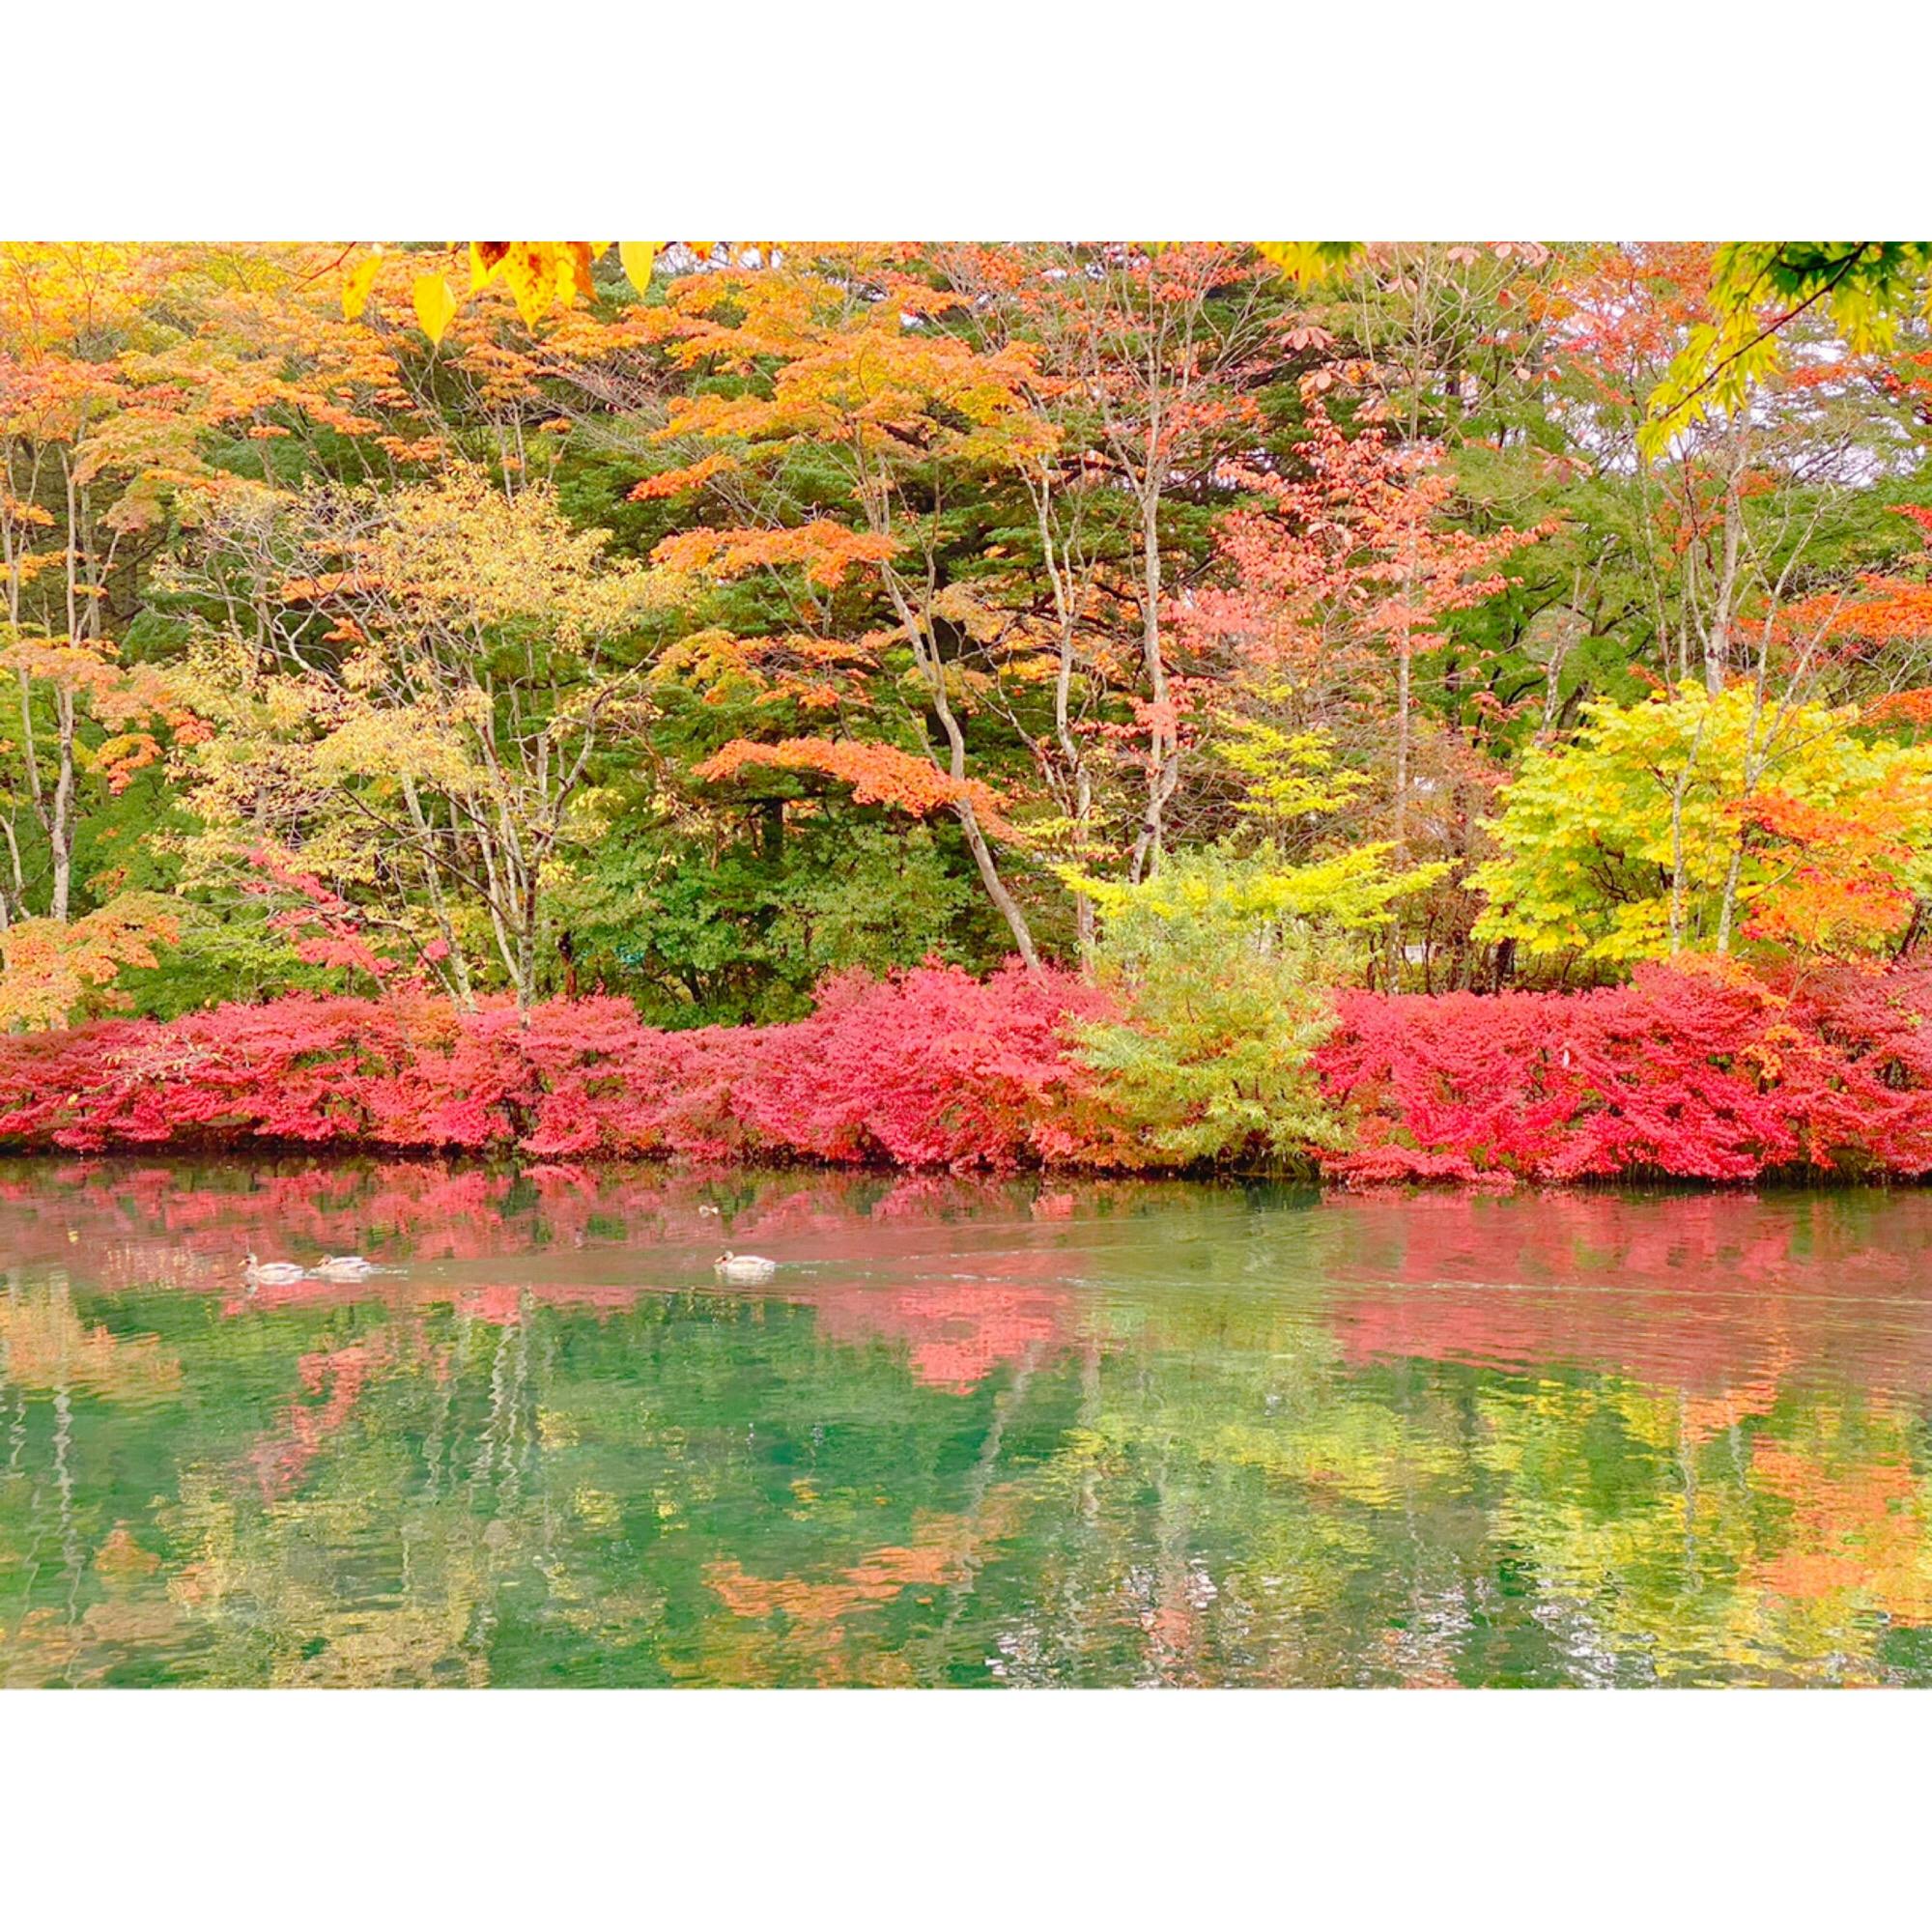 雲場池 くもばいけ の投稿写真 感想 みどころ 日帰り軽井沢旅行 雲場池 へ行ってきました トリップノート